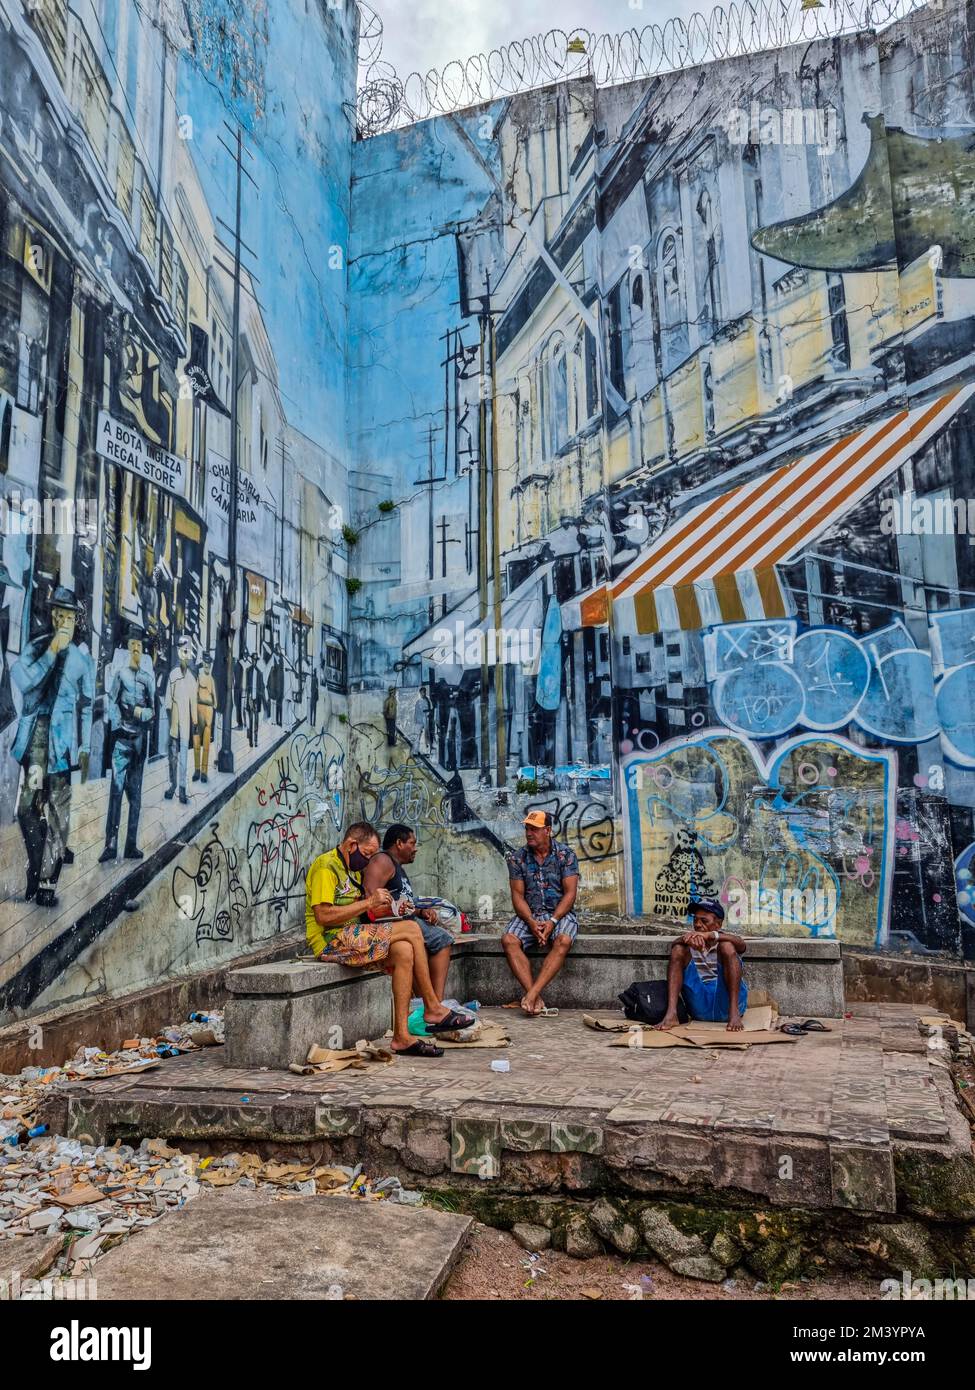 Les locaux assis sous un immense graffitti, Belem, Brésil Banque D'Images